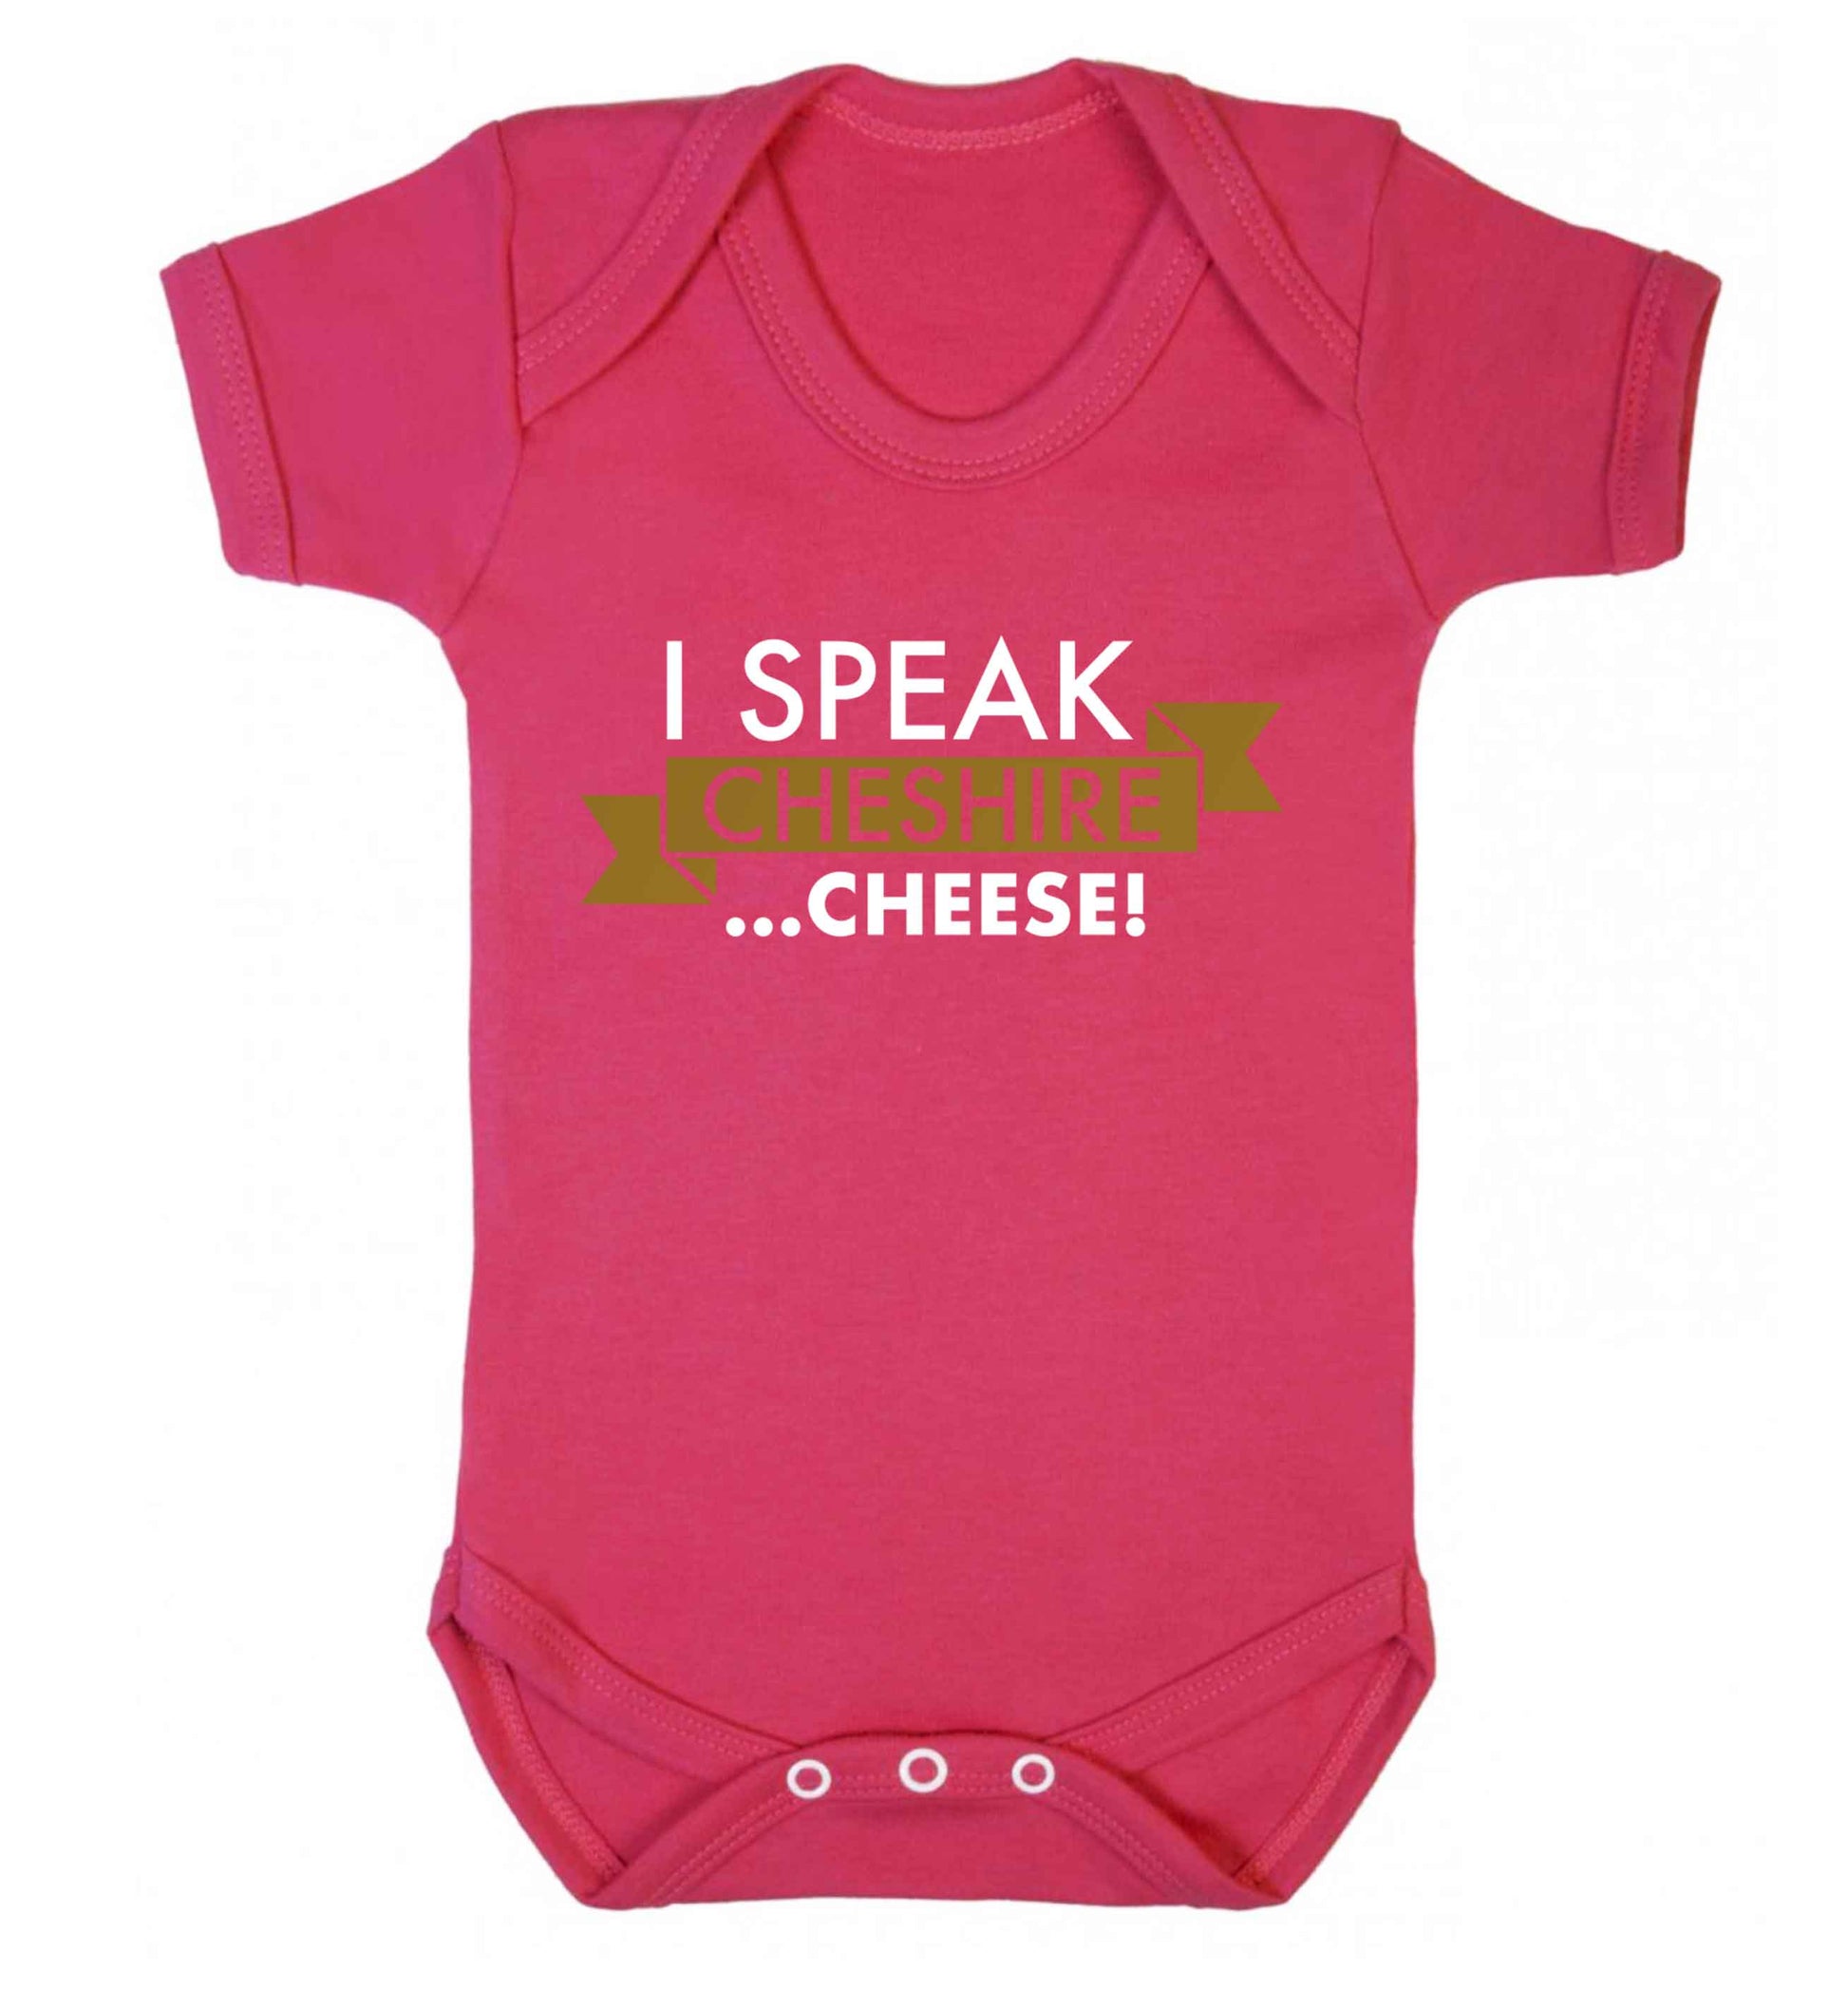 I speak Cheshire cheese Baby Vest dark pink 18-24 months